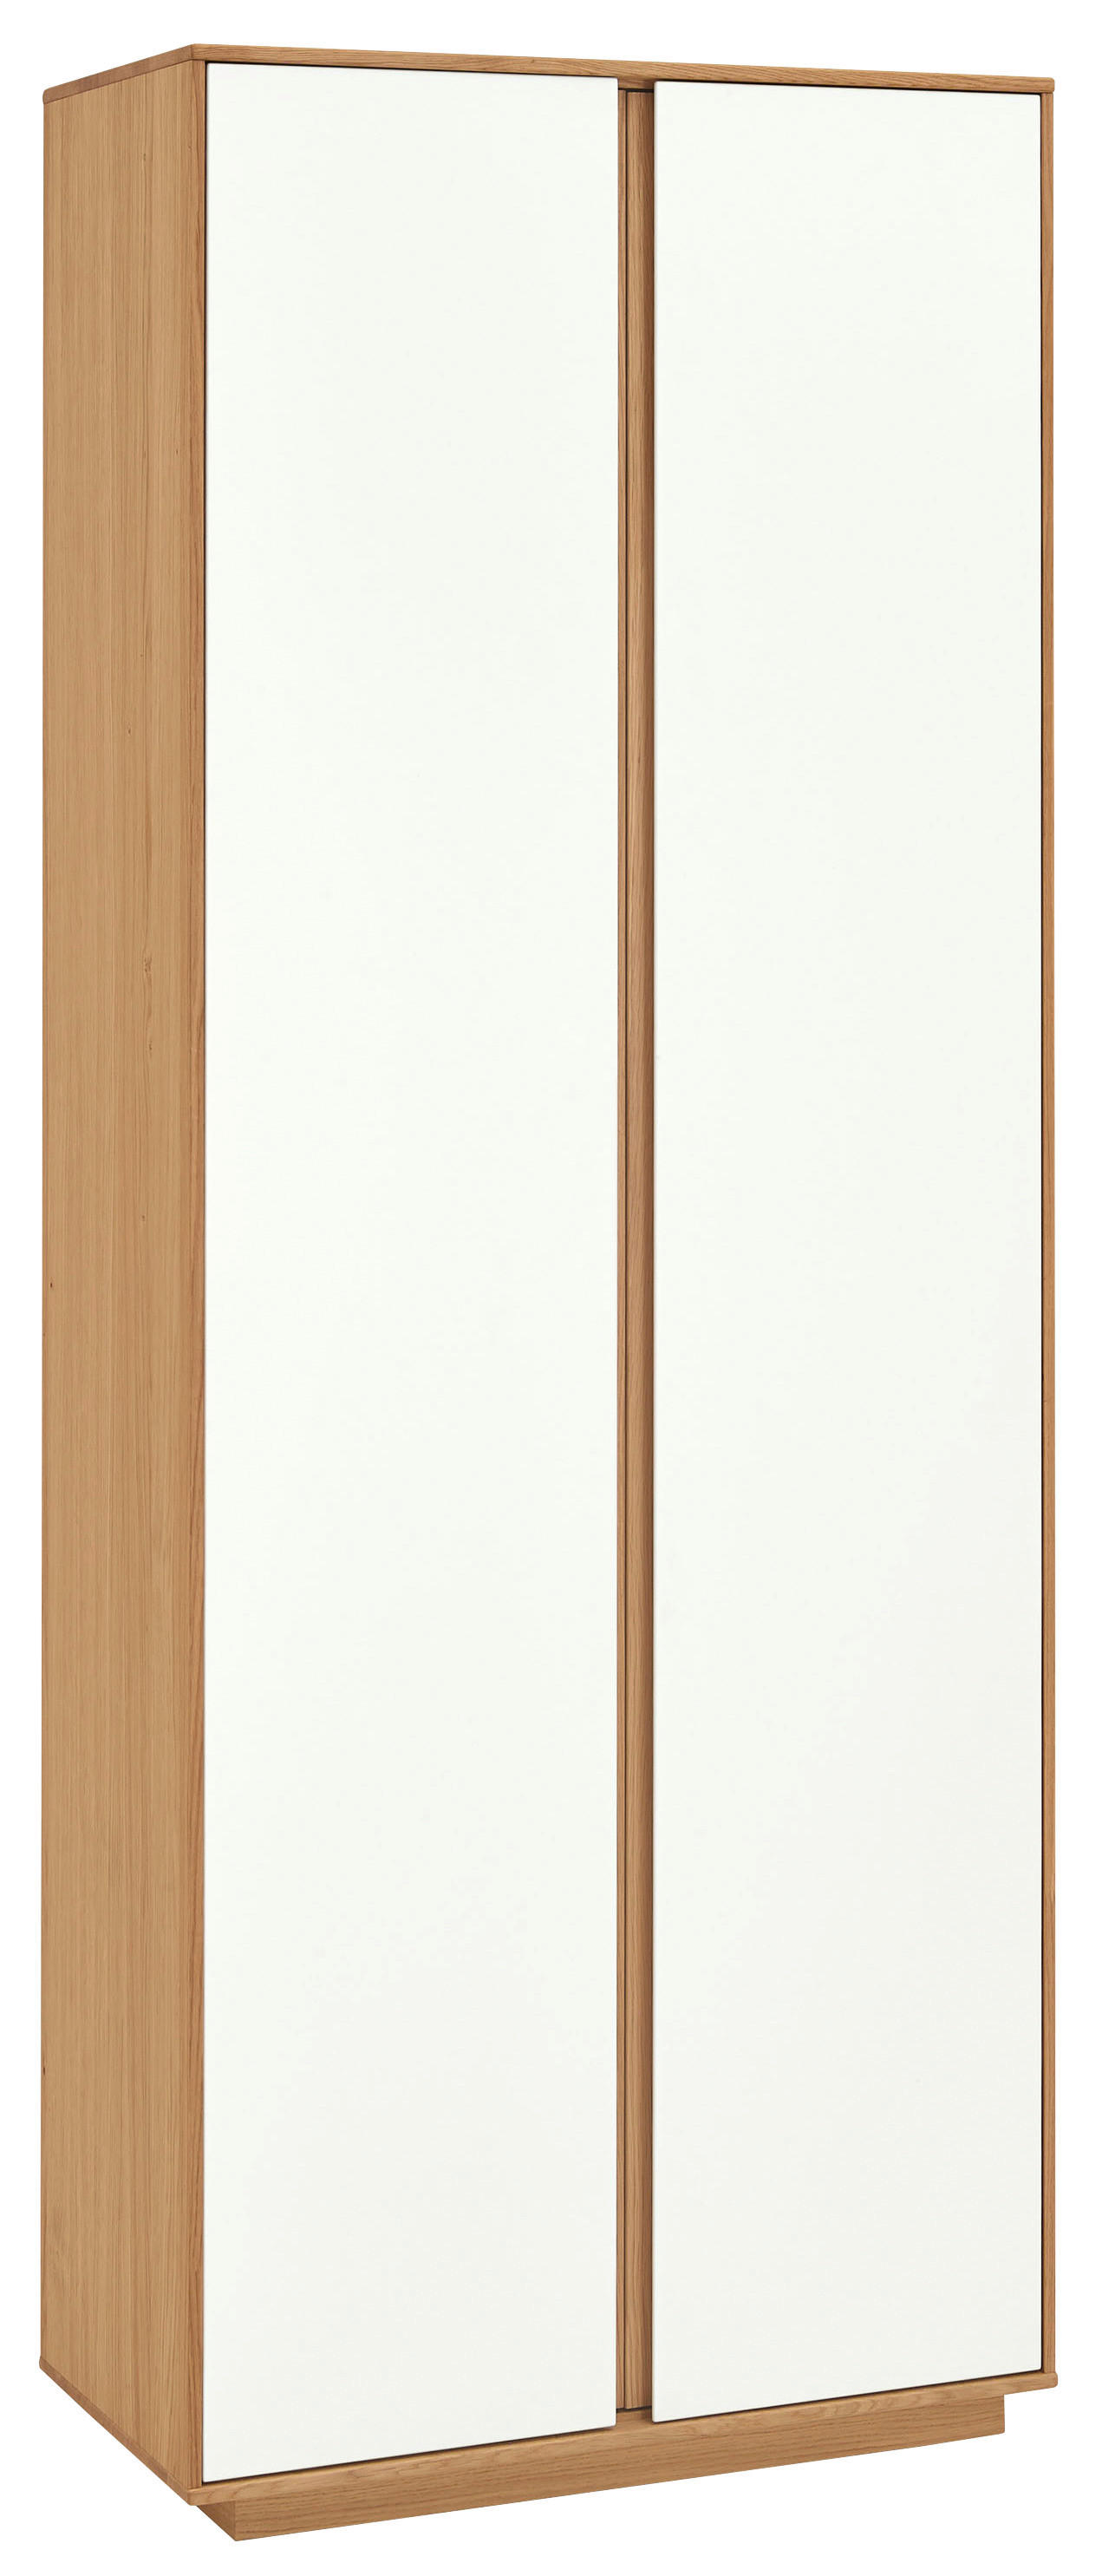 GARDEROBENSCHRANK 72/193/37 cm  - Eichefarben/Weiß, Design, Holz/Holzwerkstoff (72/193/37cm)